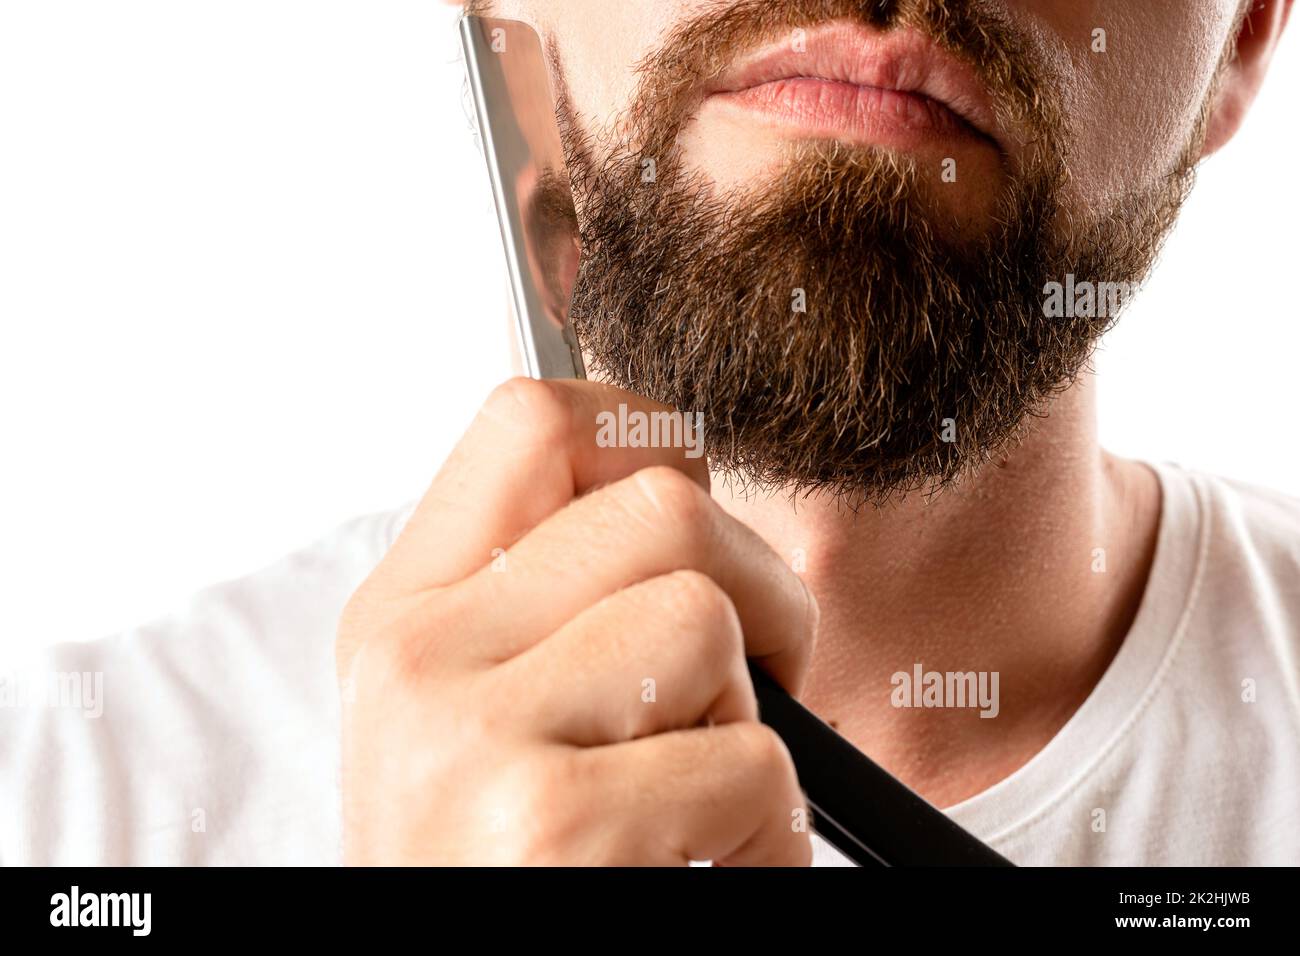 L'uomo sta rasando la barba folta con un rasoio dritto Foto Stock